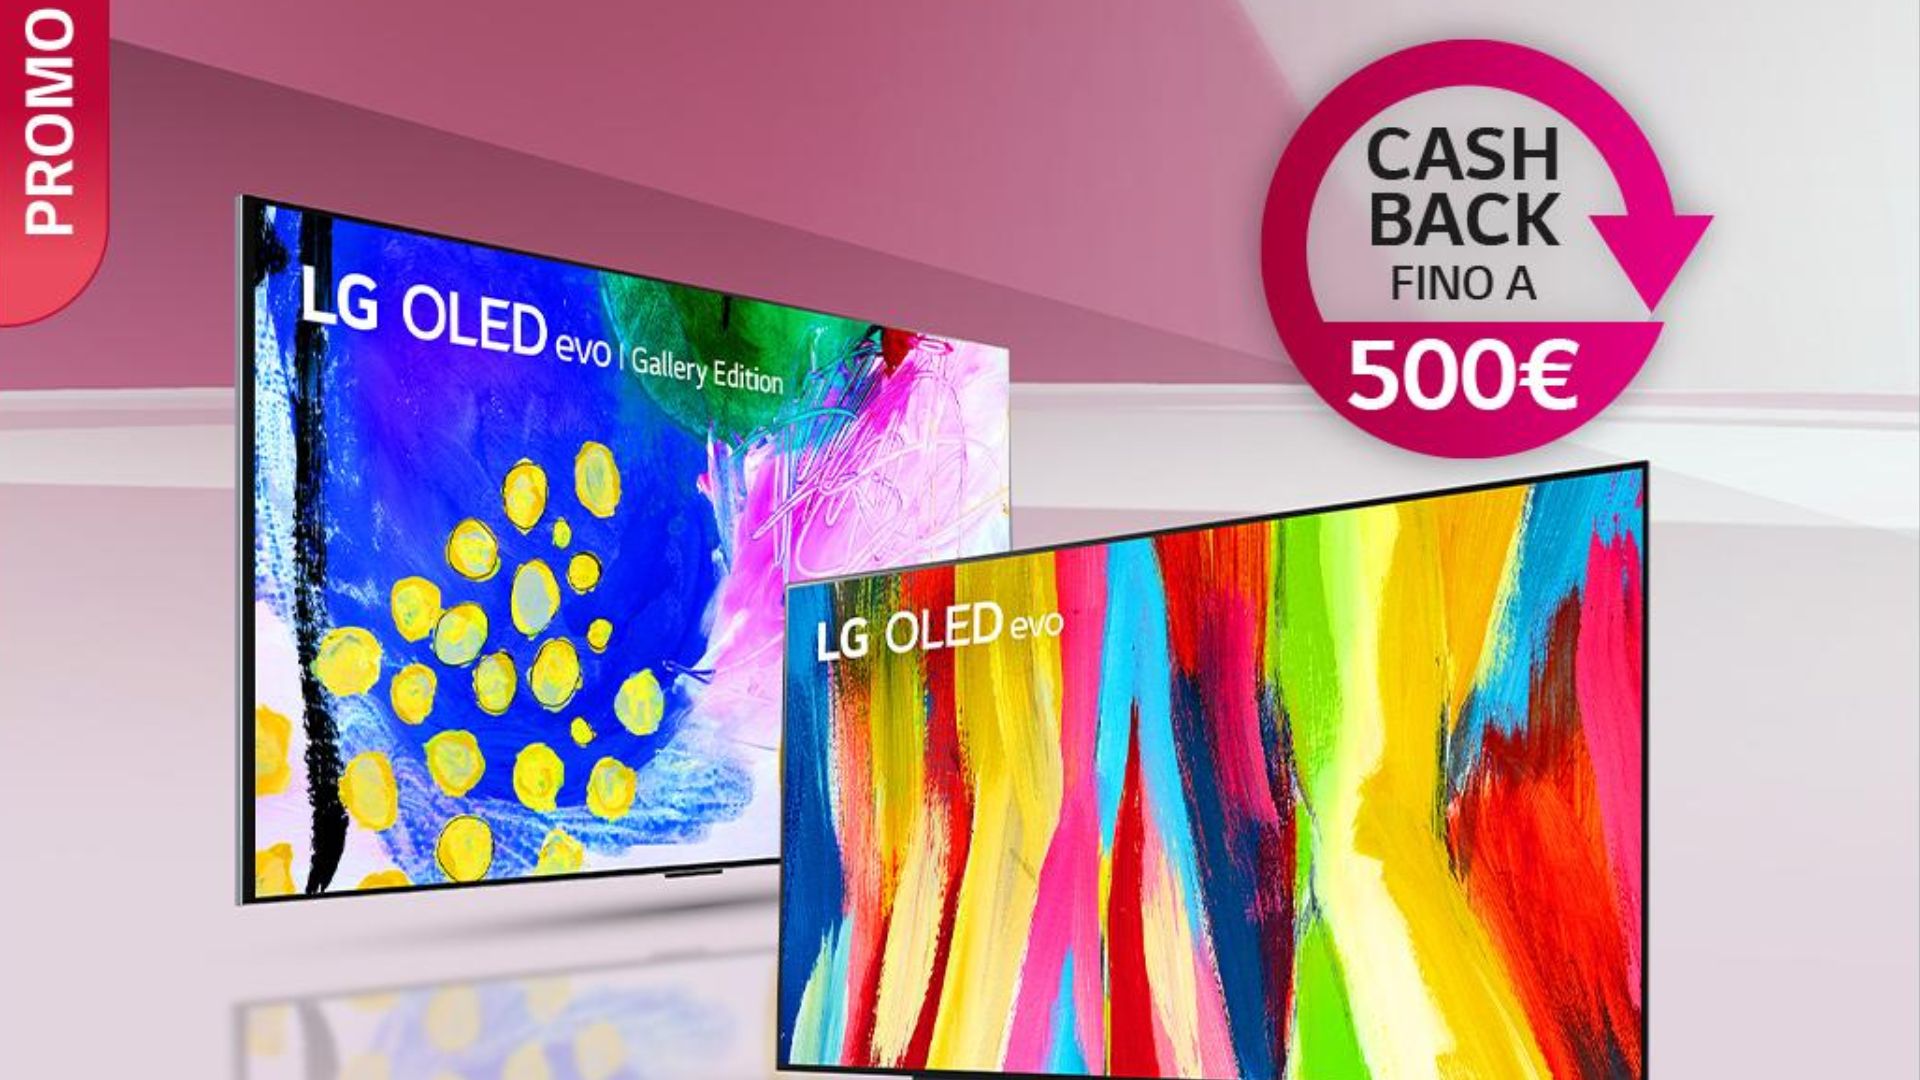 LG cashback TV OLED evo rimborso 500 euro